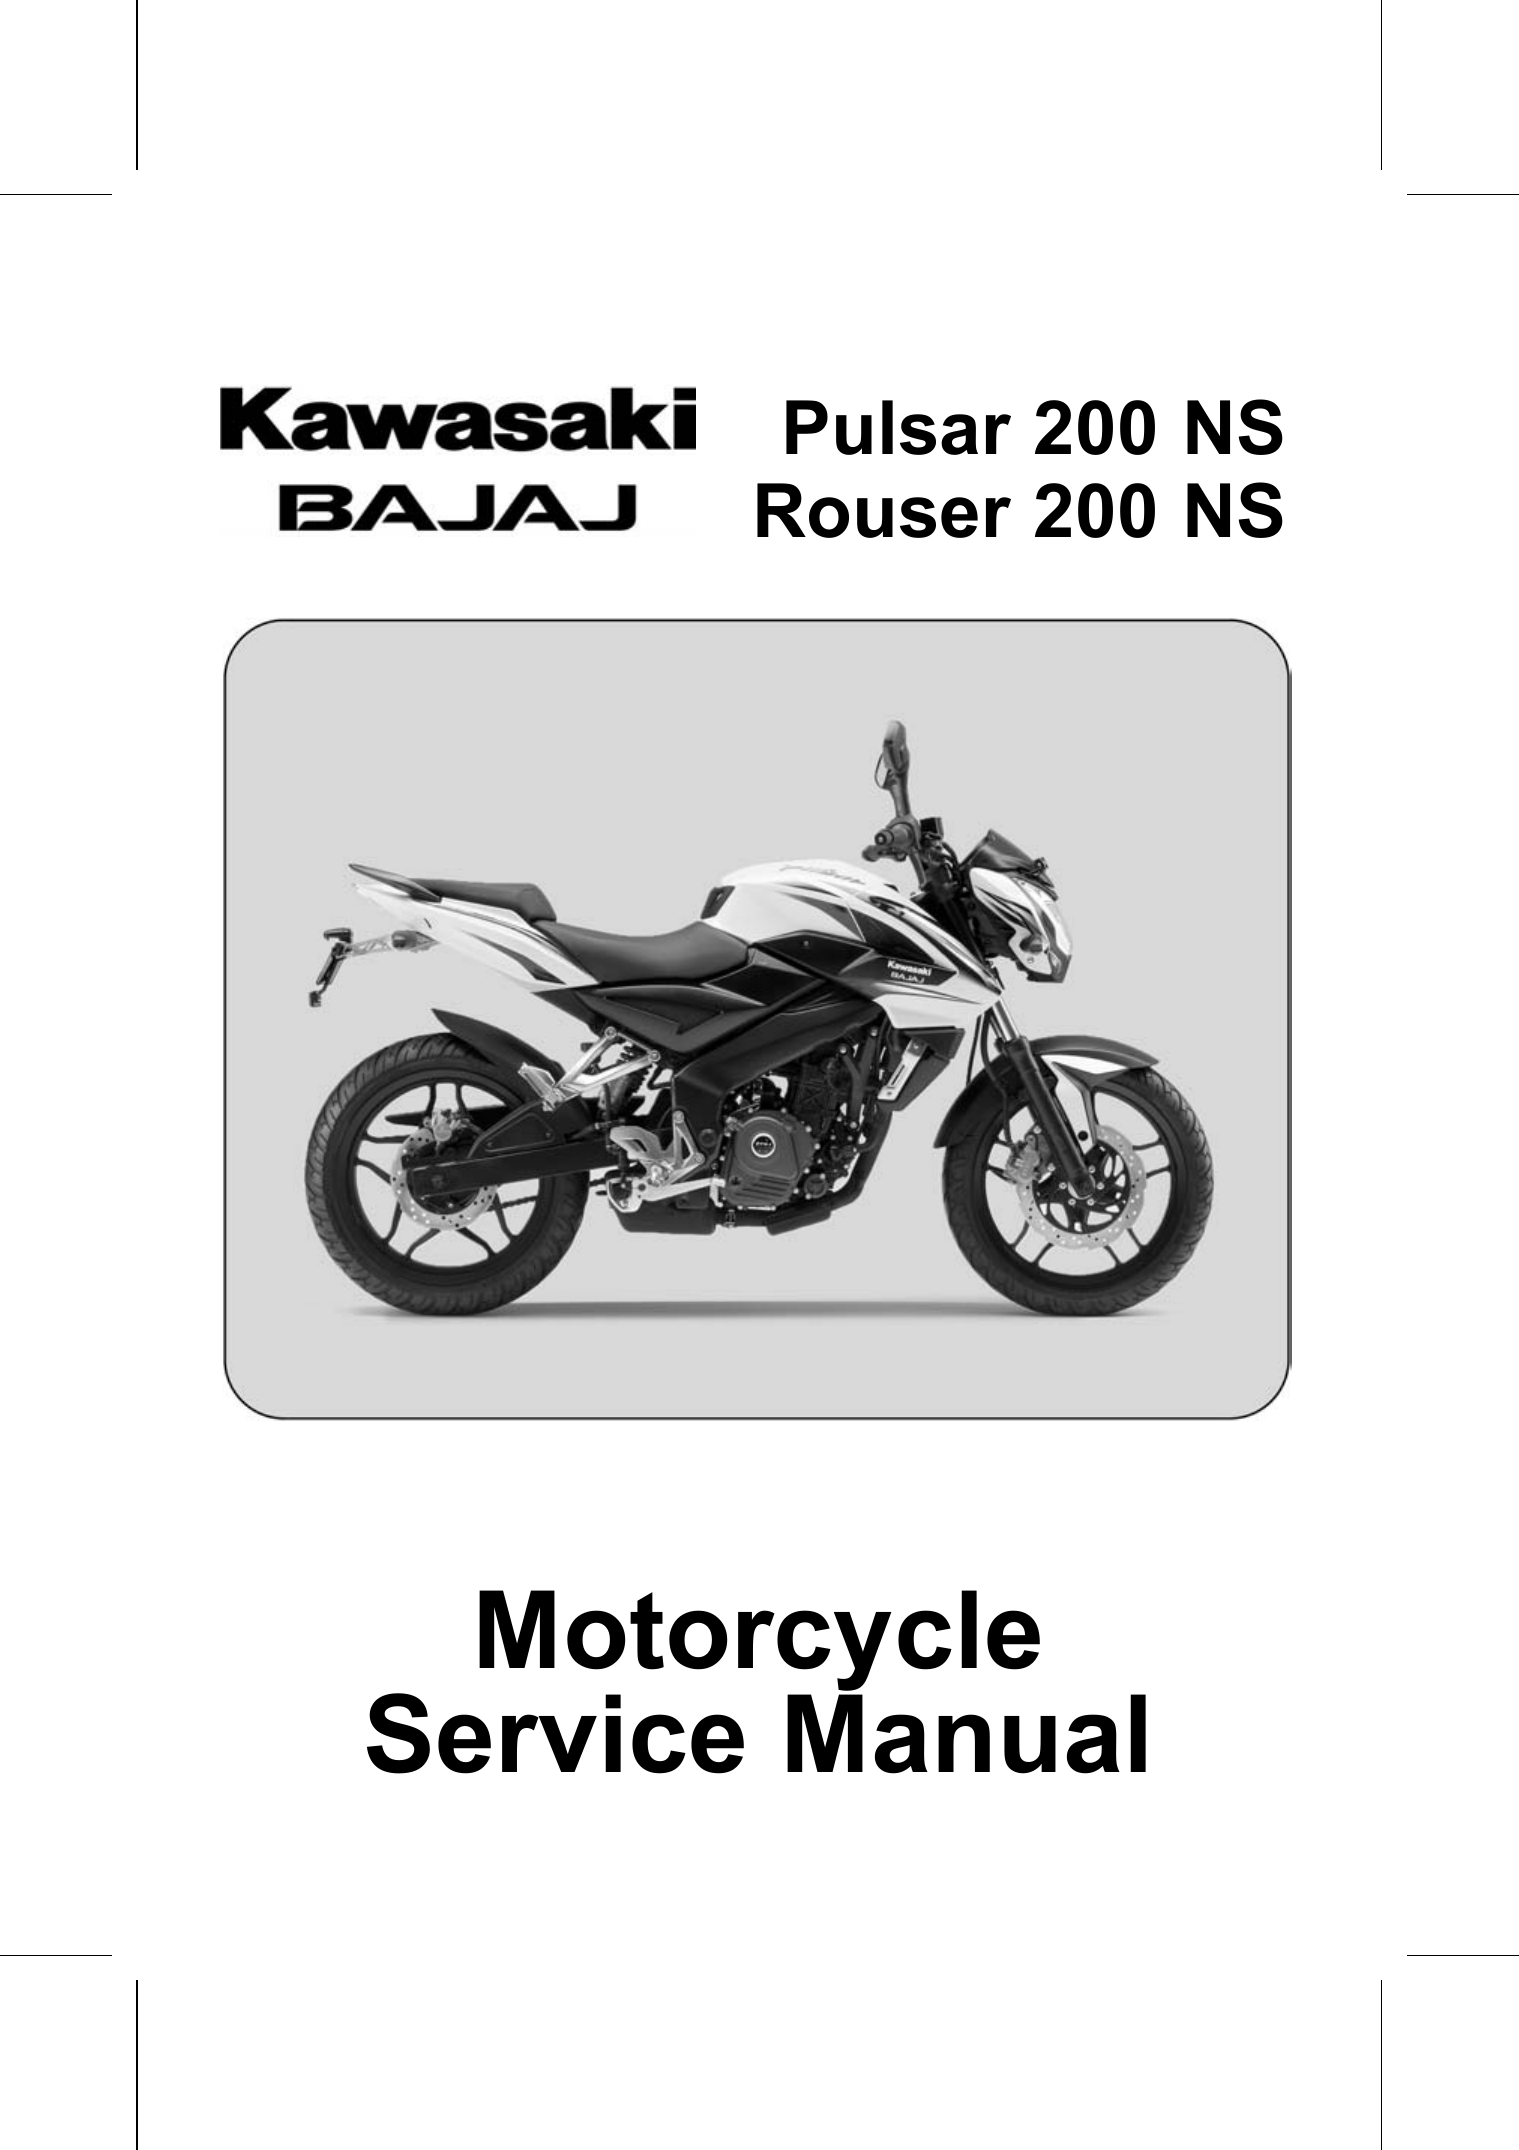 skøjte Kinematik våben Kawasaki BAJAJ Pulsar 200 NS Service Manual | Manualzz